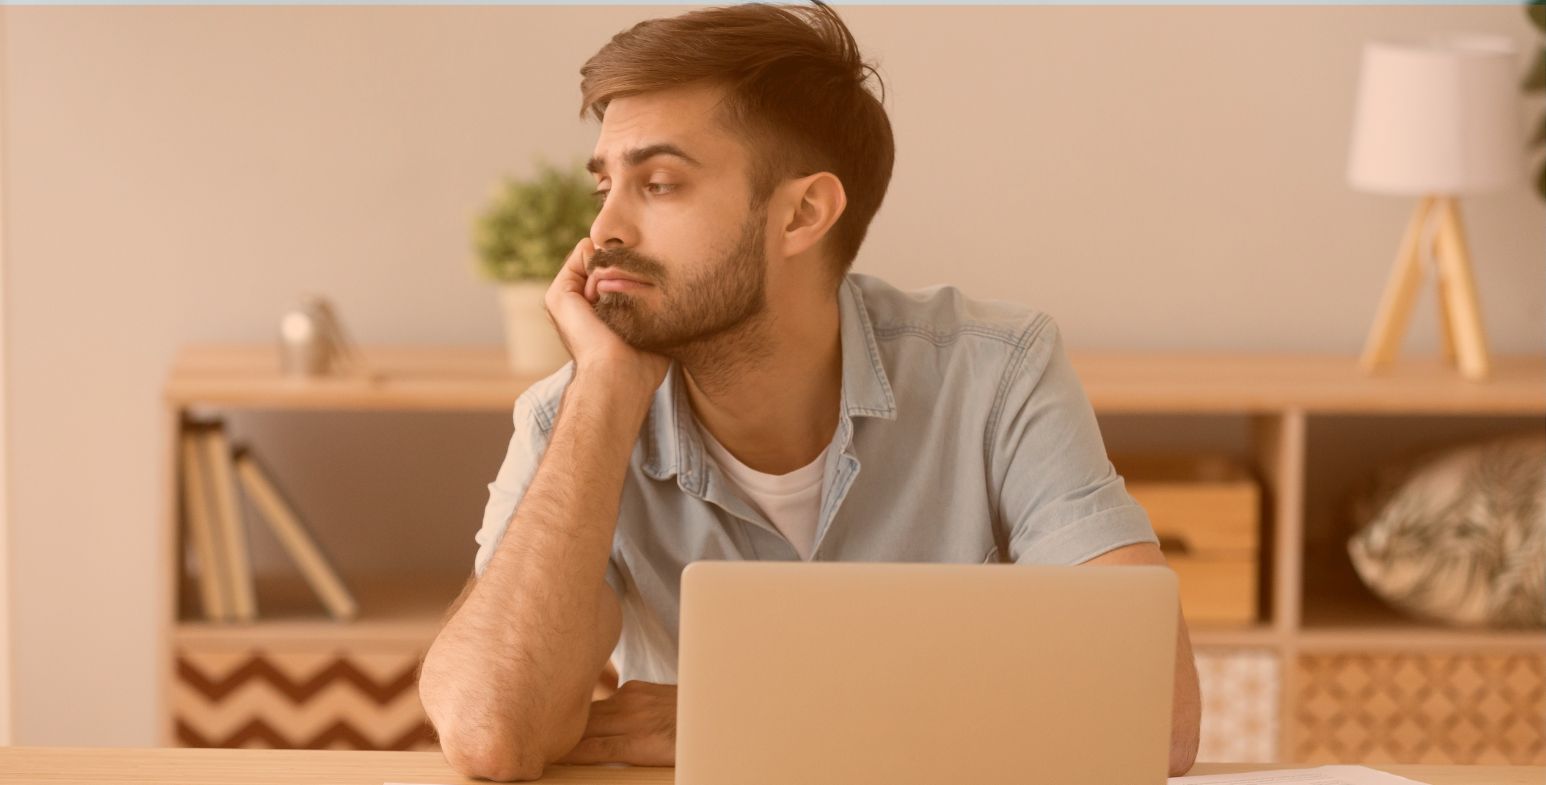 Nieodpowiednio zmotywowany pracownik siedzi przed laptopem i zastanawia się nad utratą pracy